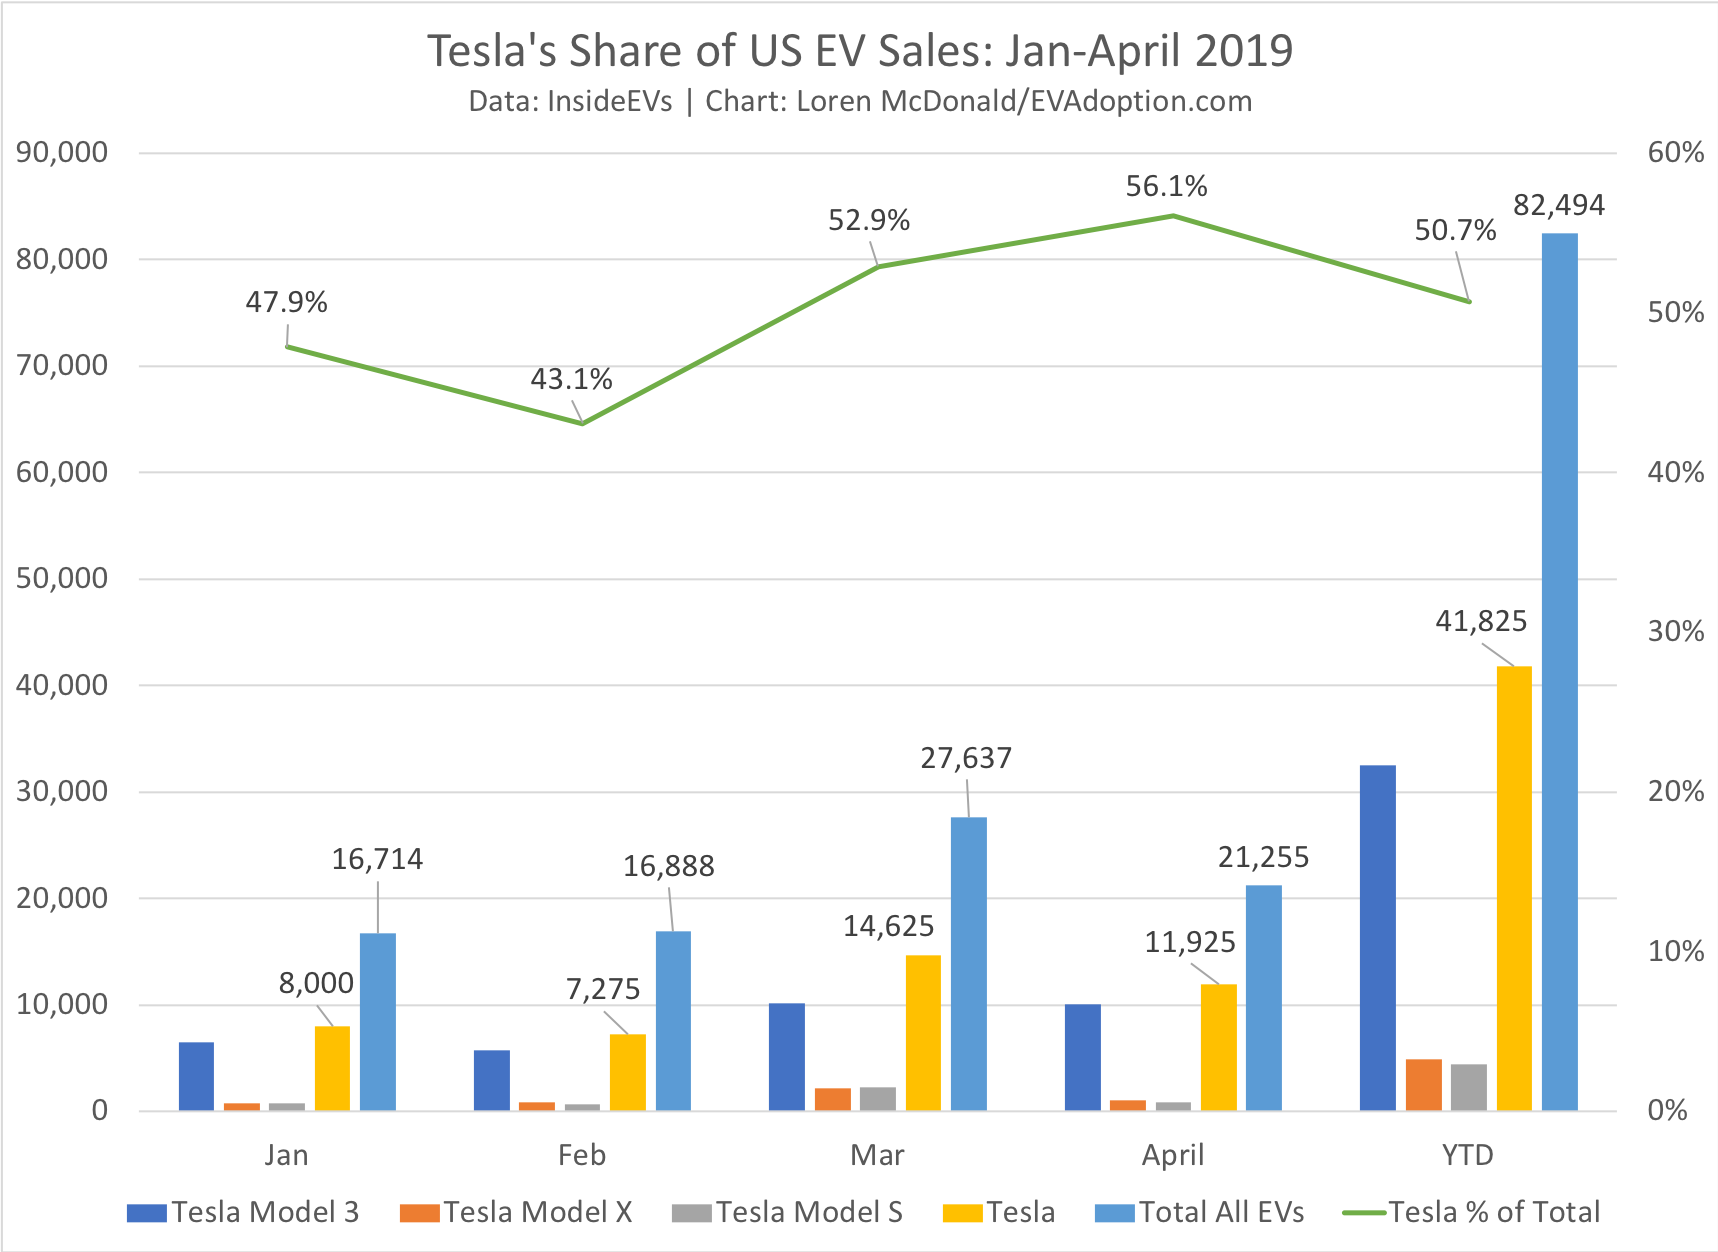 Tesla's Share of US EV Sales Jan-April 2019